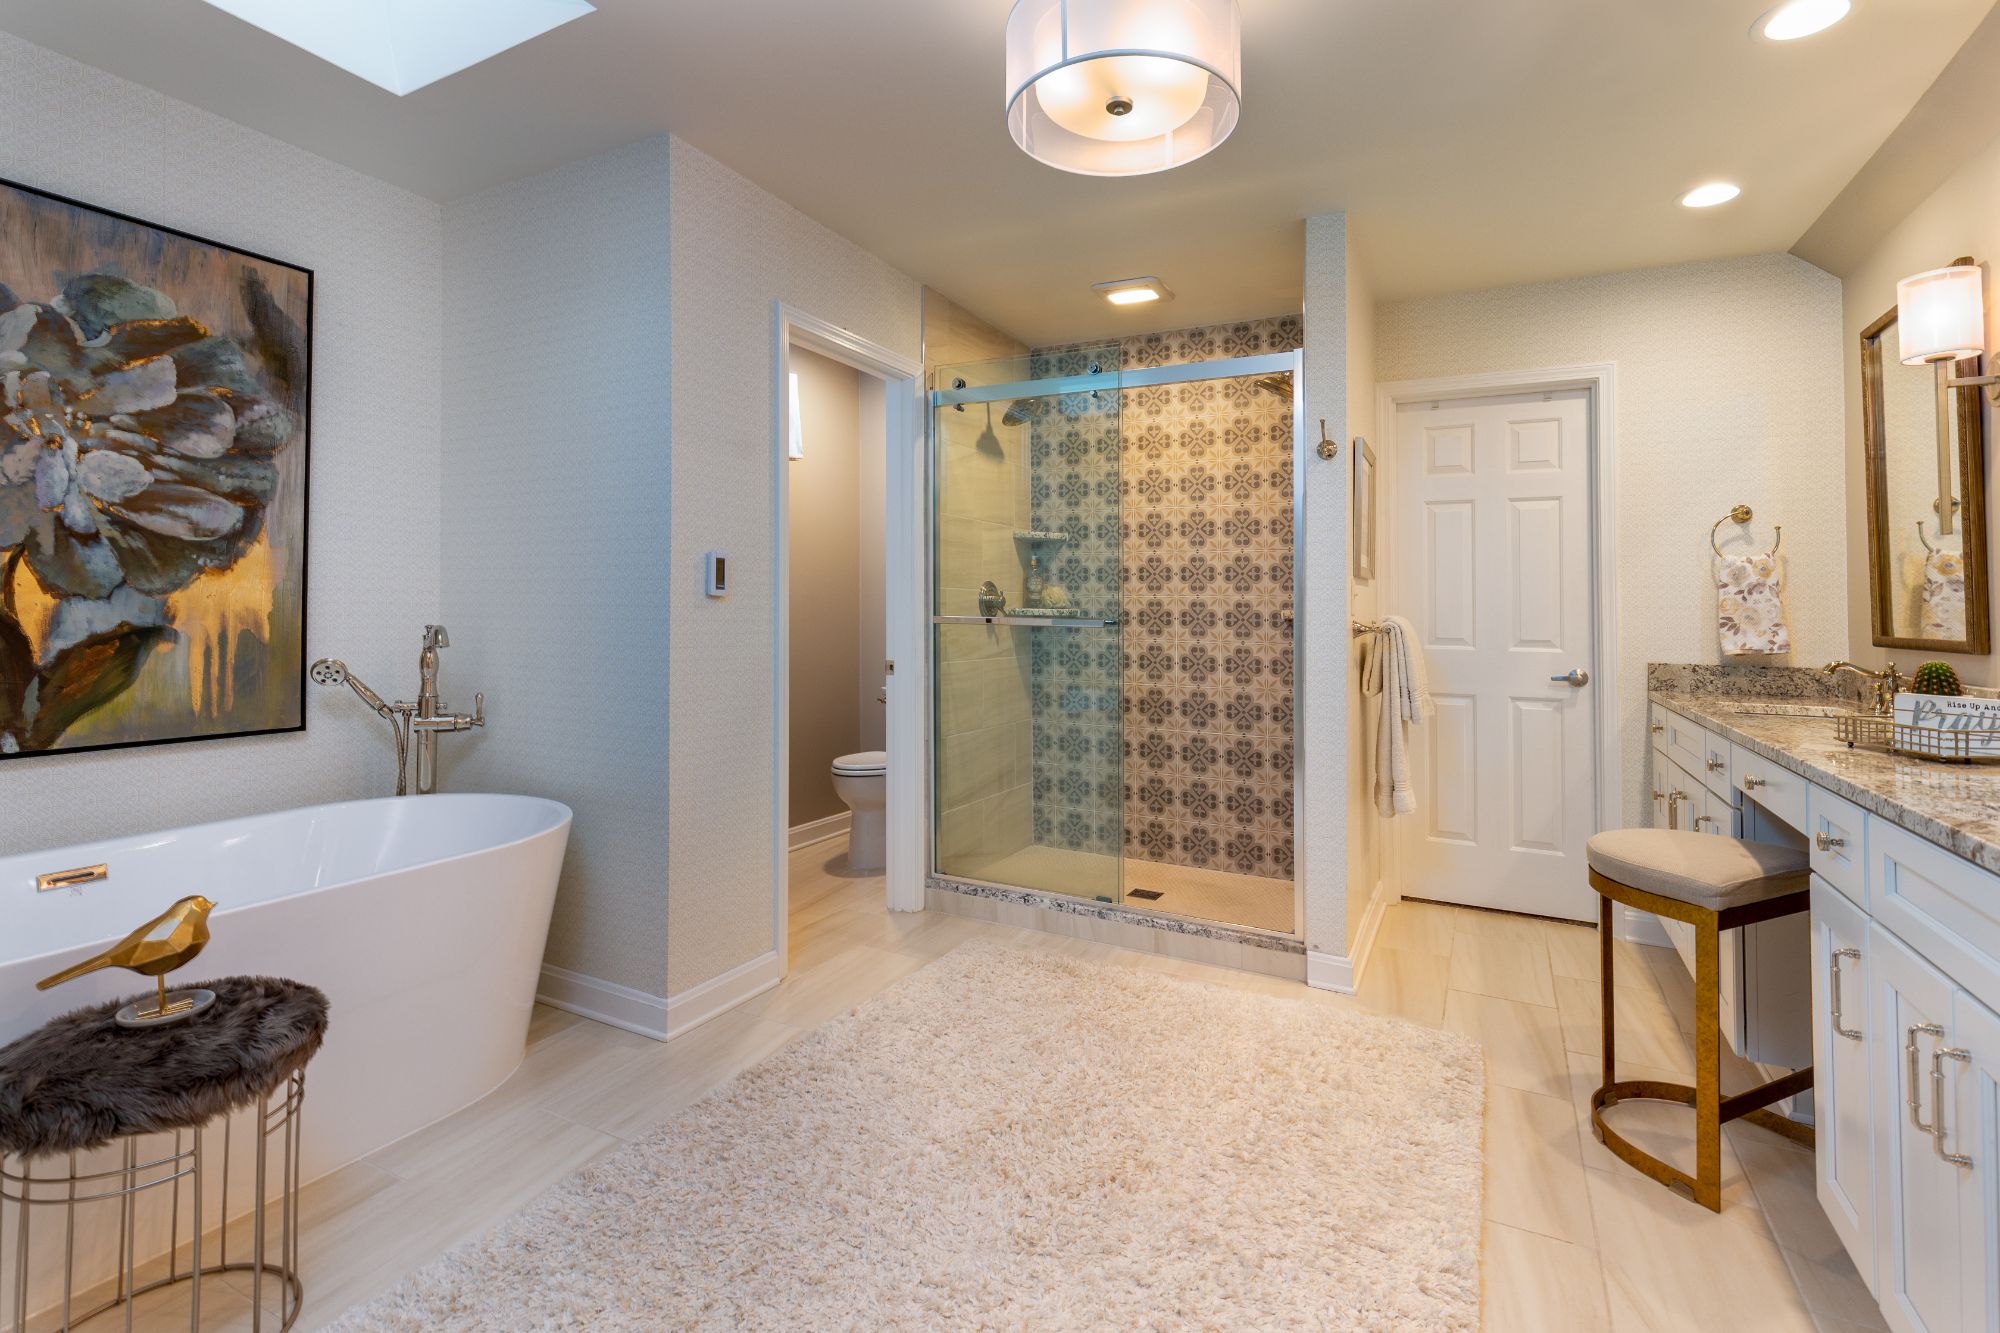 Professional Bathroom Interior Design